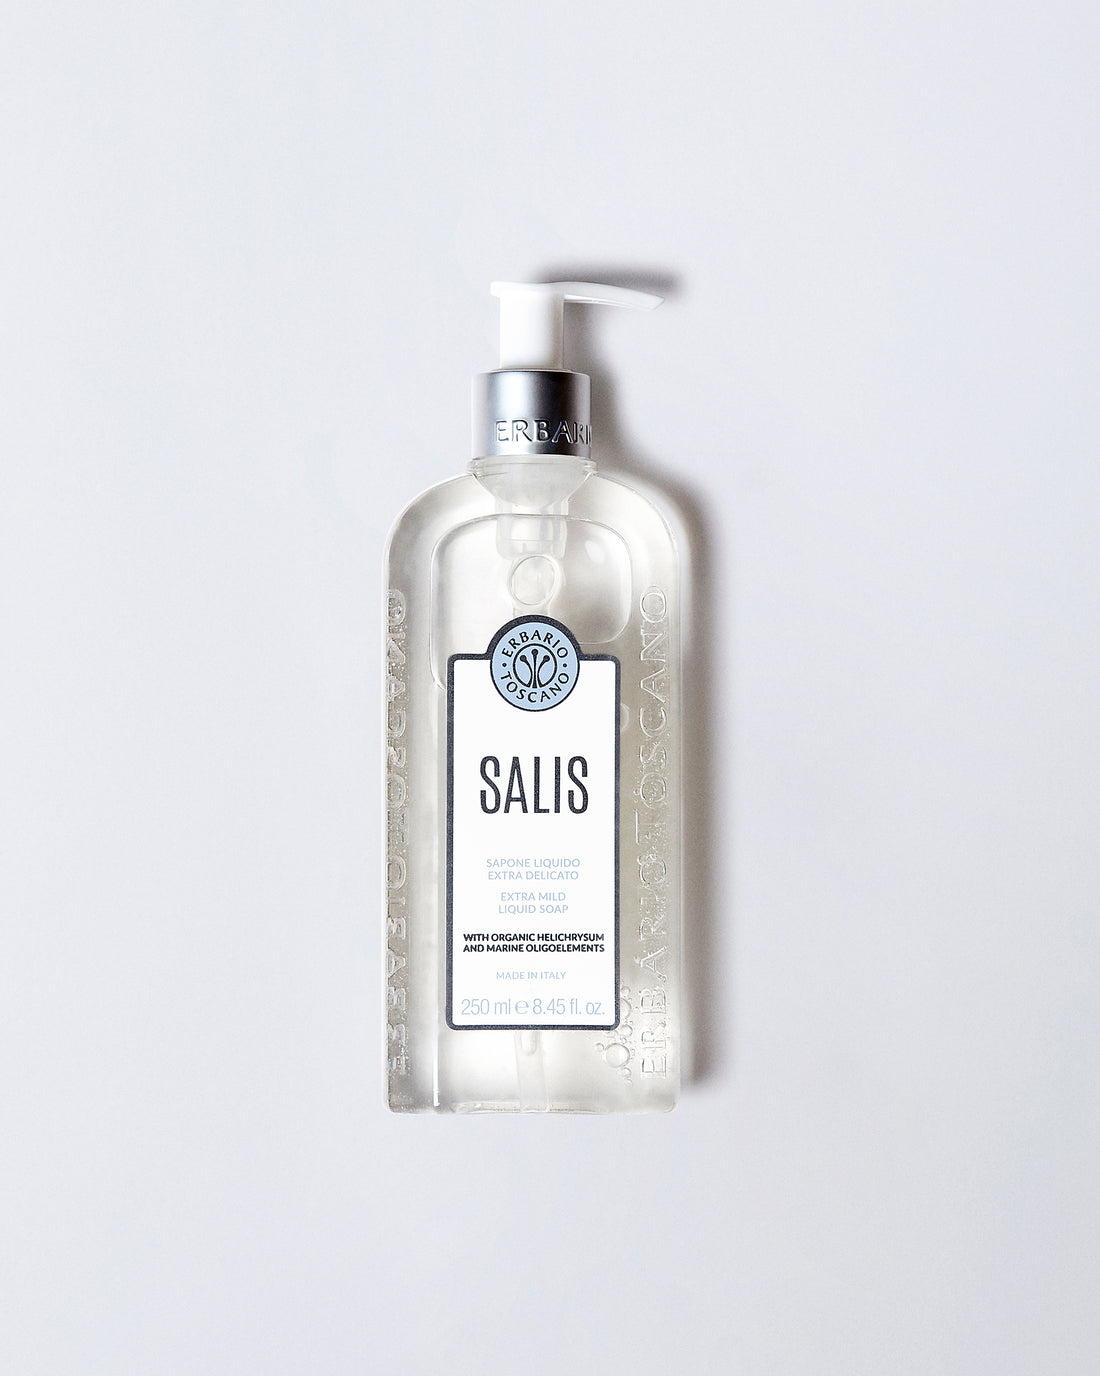 SALIS EXTRA DELICATE LIQUID SOAP 250ml